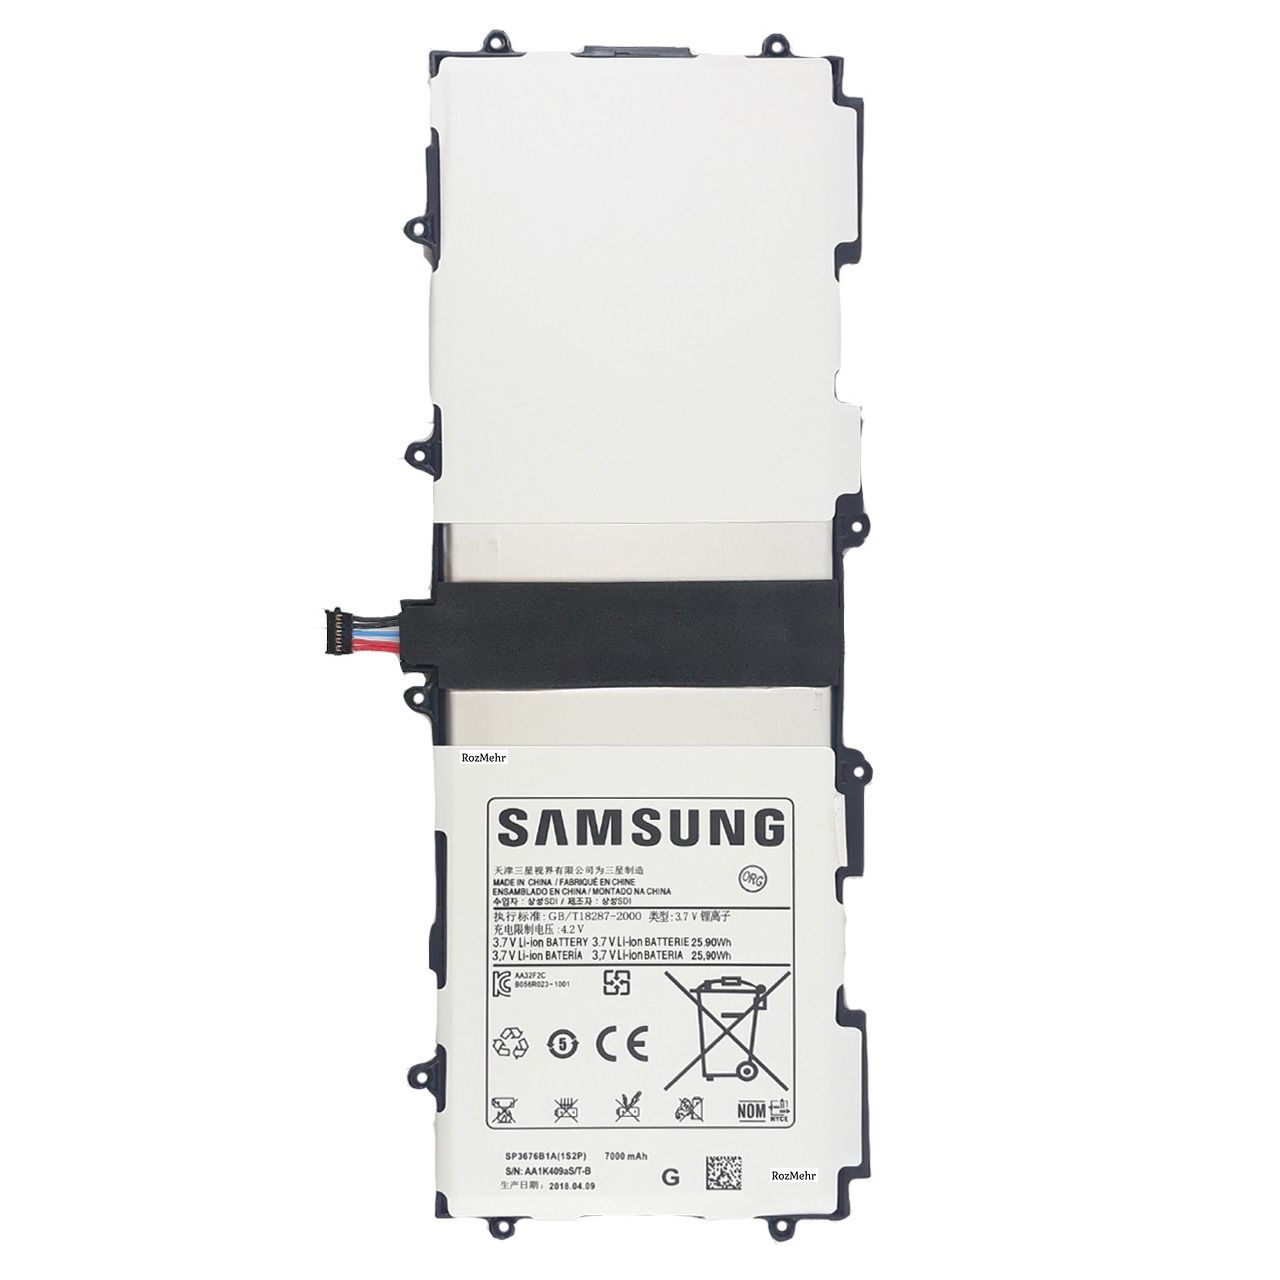 باتری تبلت مدل SP3676B1A23 ظرفیت 7000 میلی آمپر ساعت مناسب برای تبلت سامسونگ Galaxy Tab 2 10.1